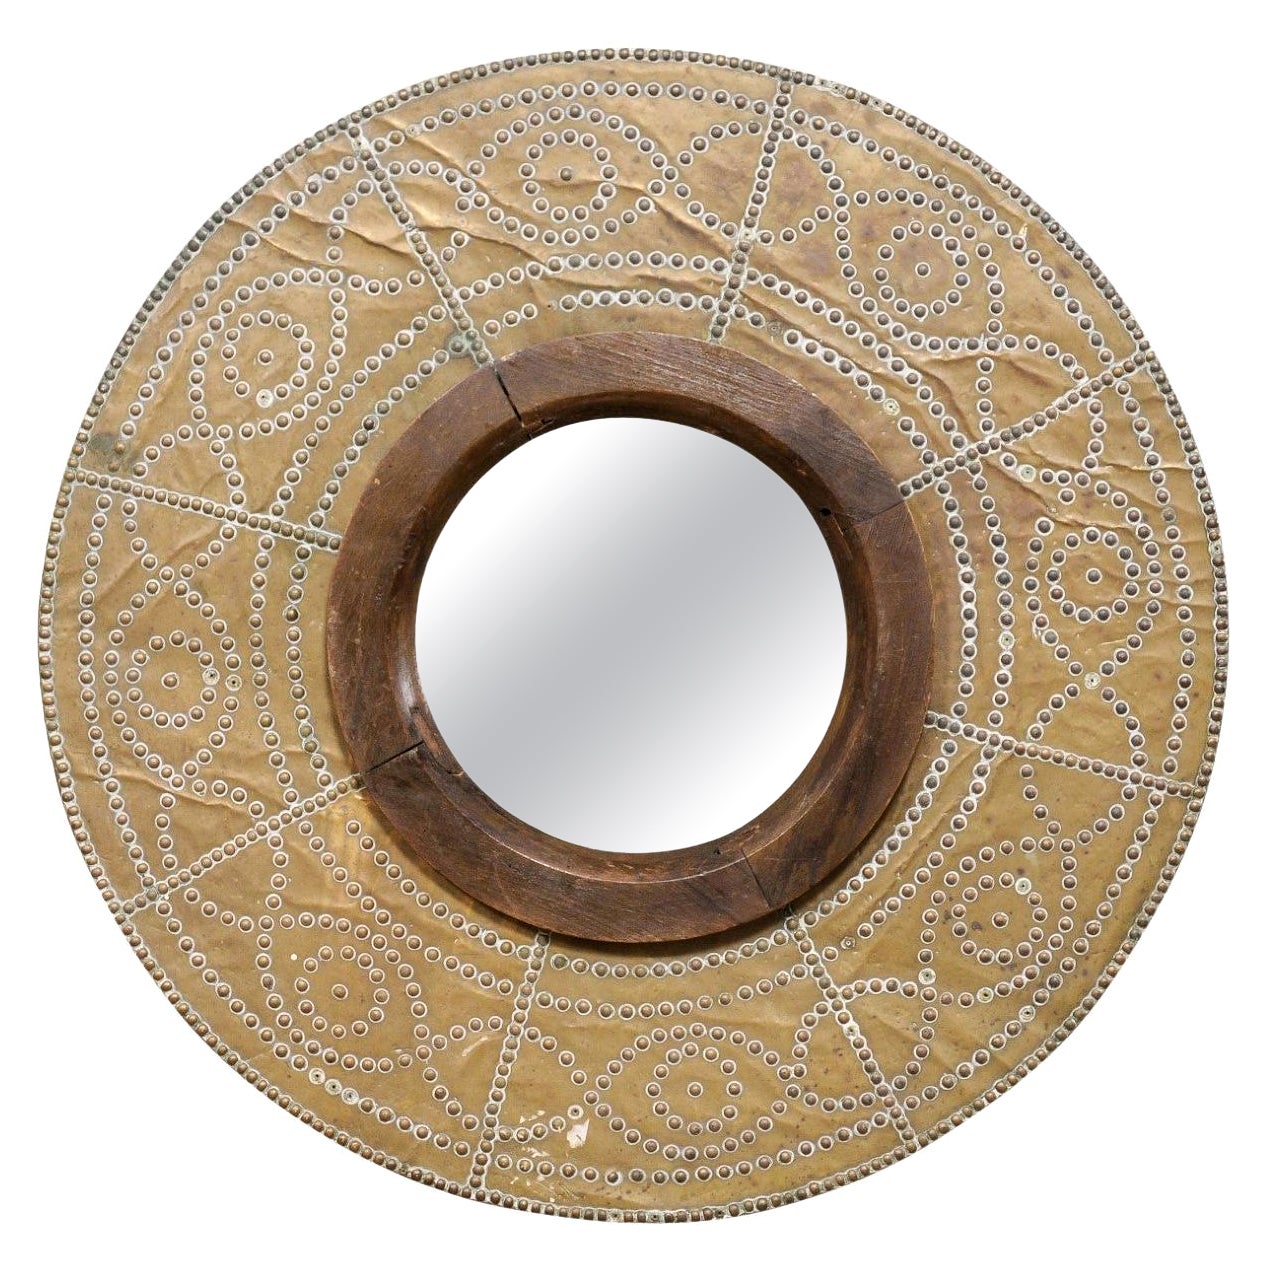 Spanischer Kupferbrenner mit Spiegel aus dem 19. Jahrhundert